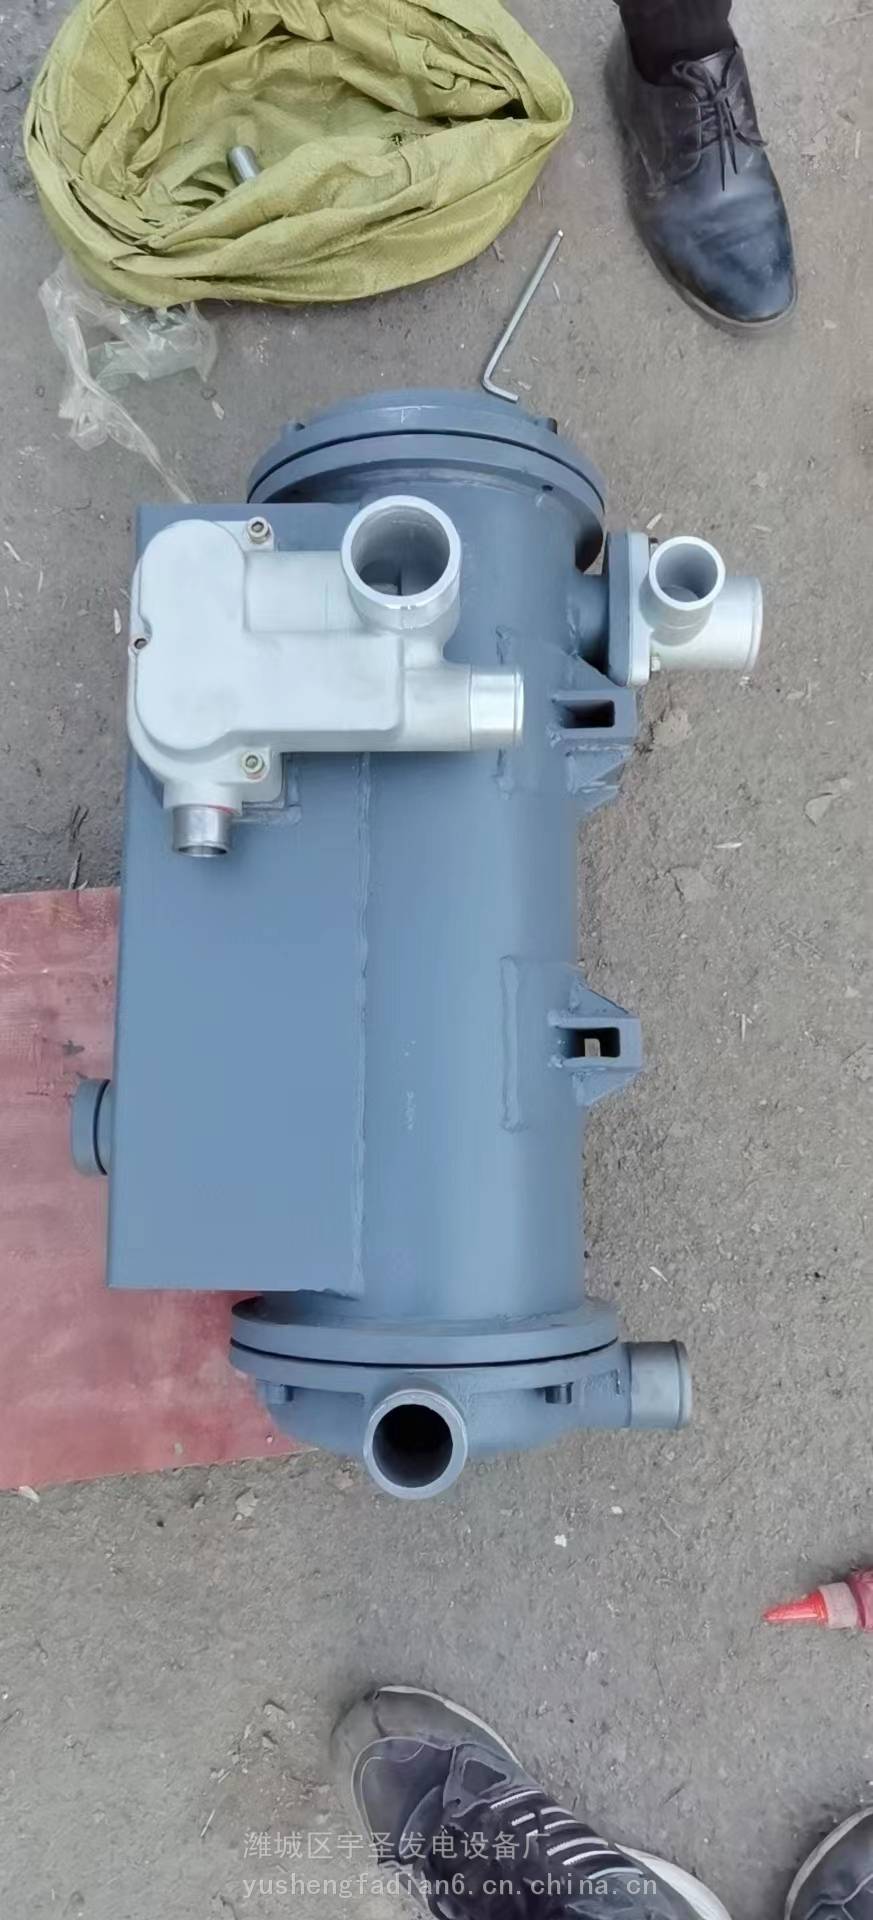 潍柴13023061道依茨226B发动机水泵总成潍柴水泵潍柴发动机水泵